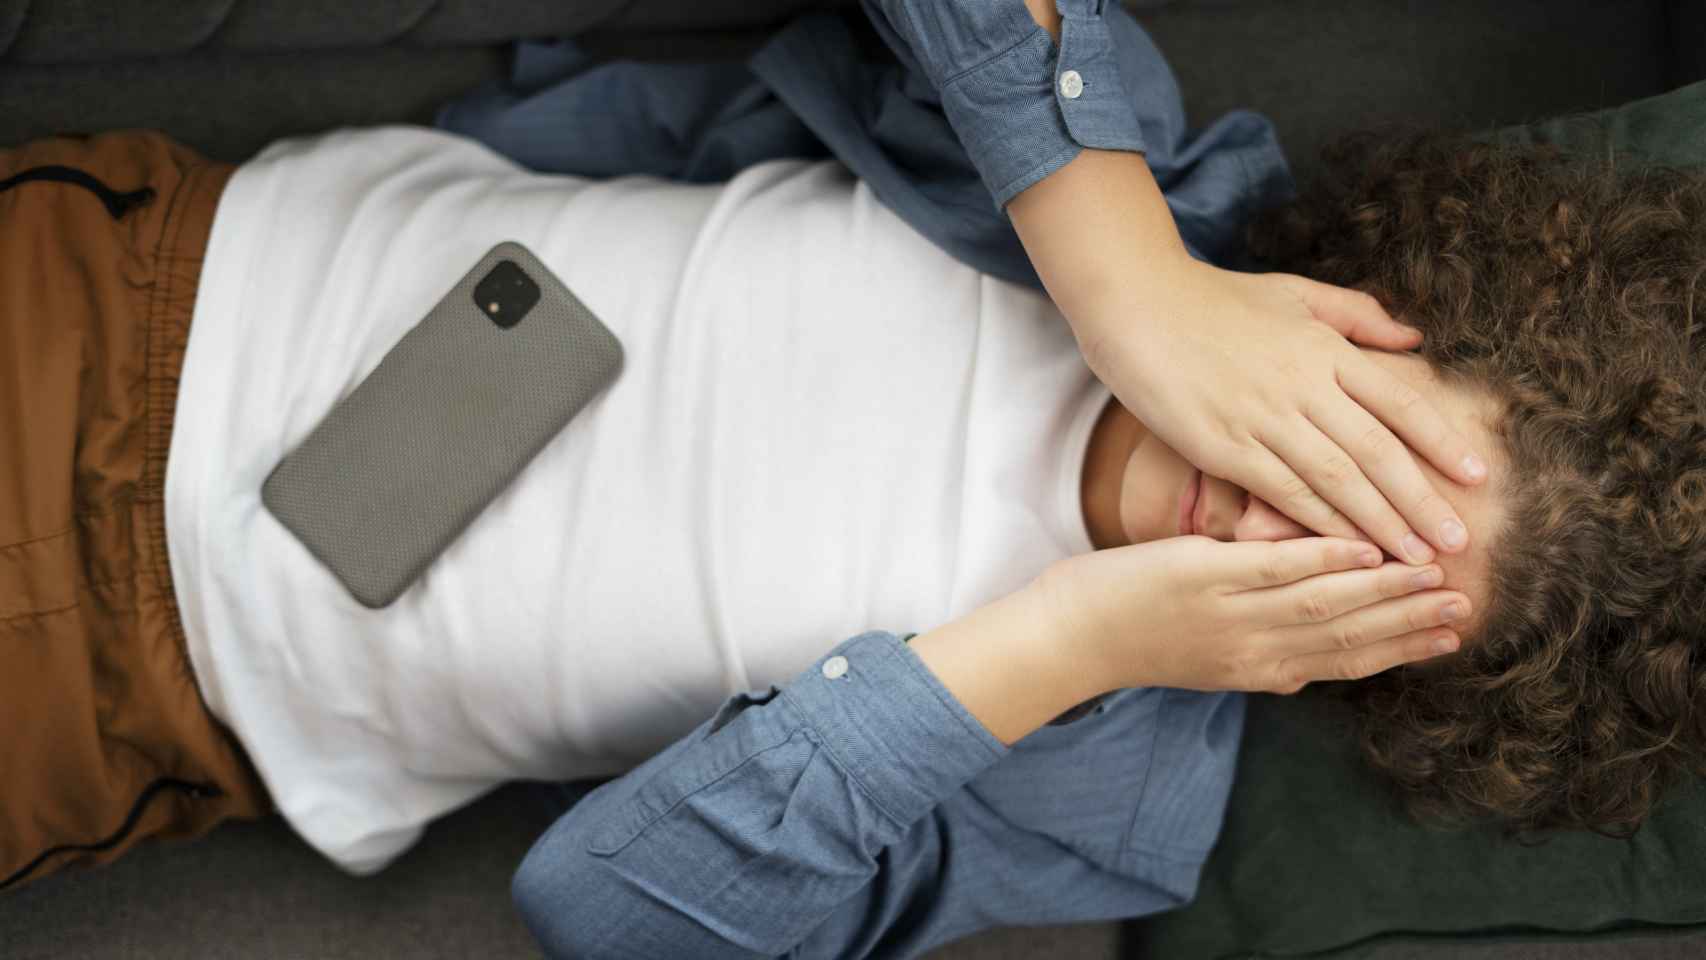 Un joven tumbado con su teléfono móvil y preocupado.